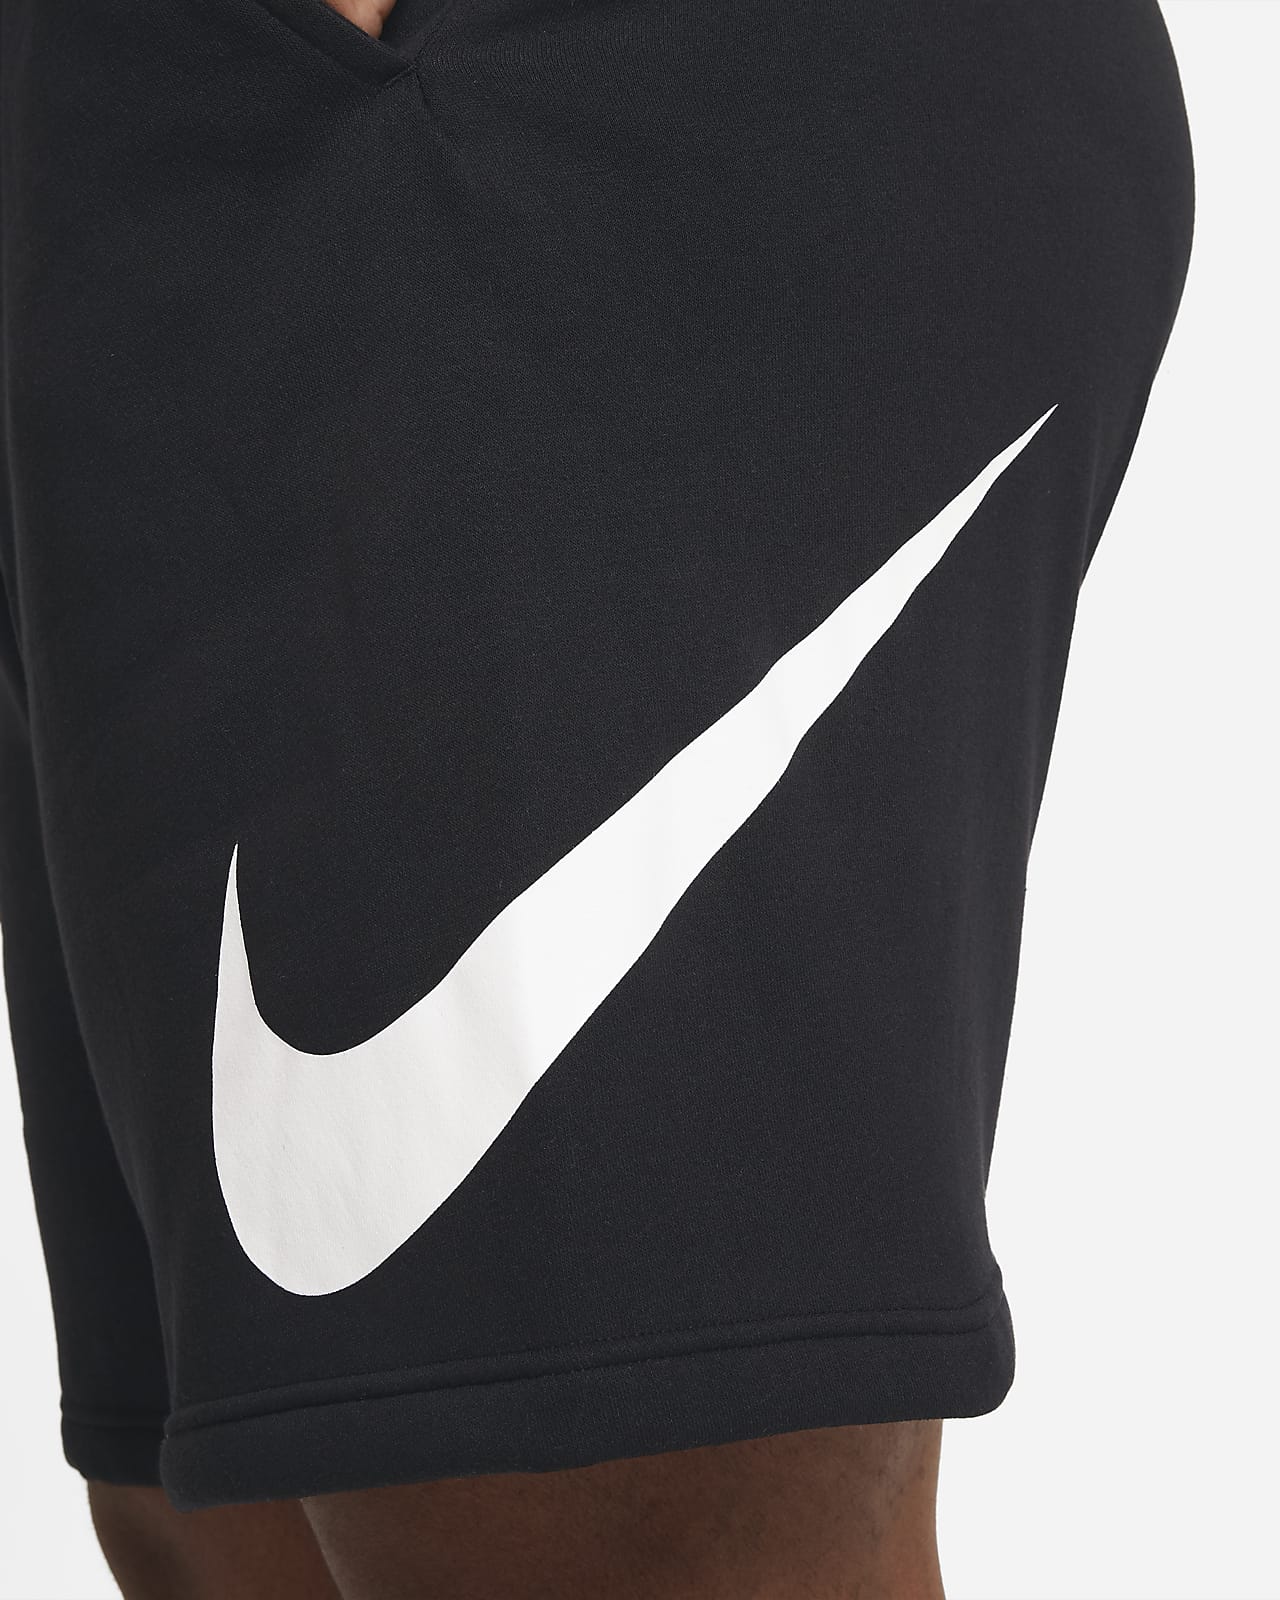 Nike Dri-Fit T-Shirt/Shorts Set Black – StockUK